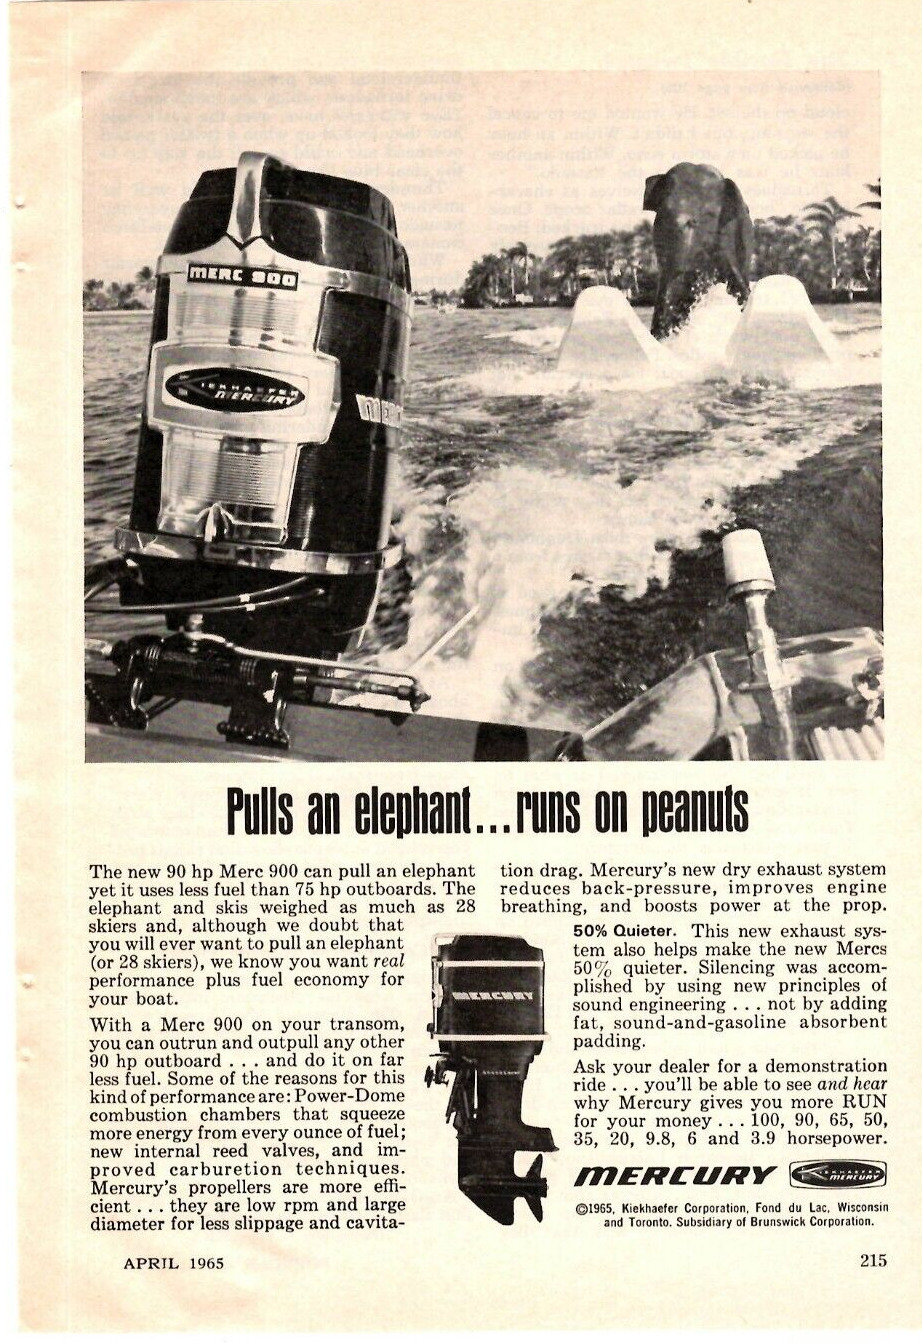 1965 Print Ad  Kiekhaefer Mercury 90 HP 900 Pulls an elephant runs on peanuts